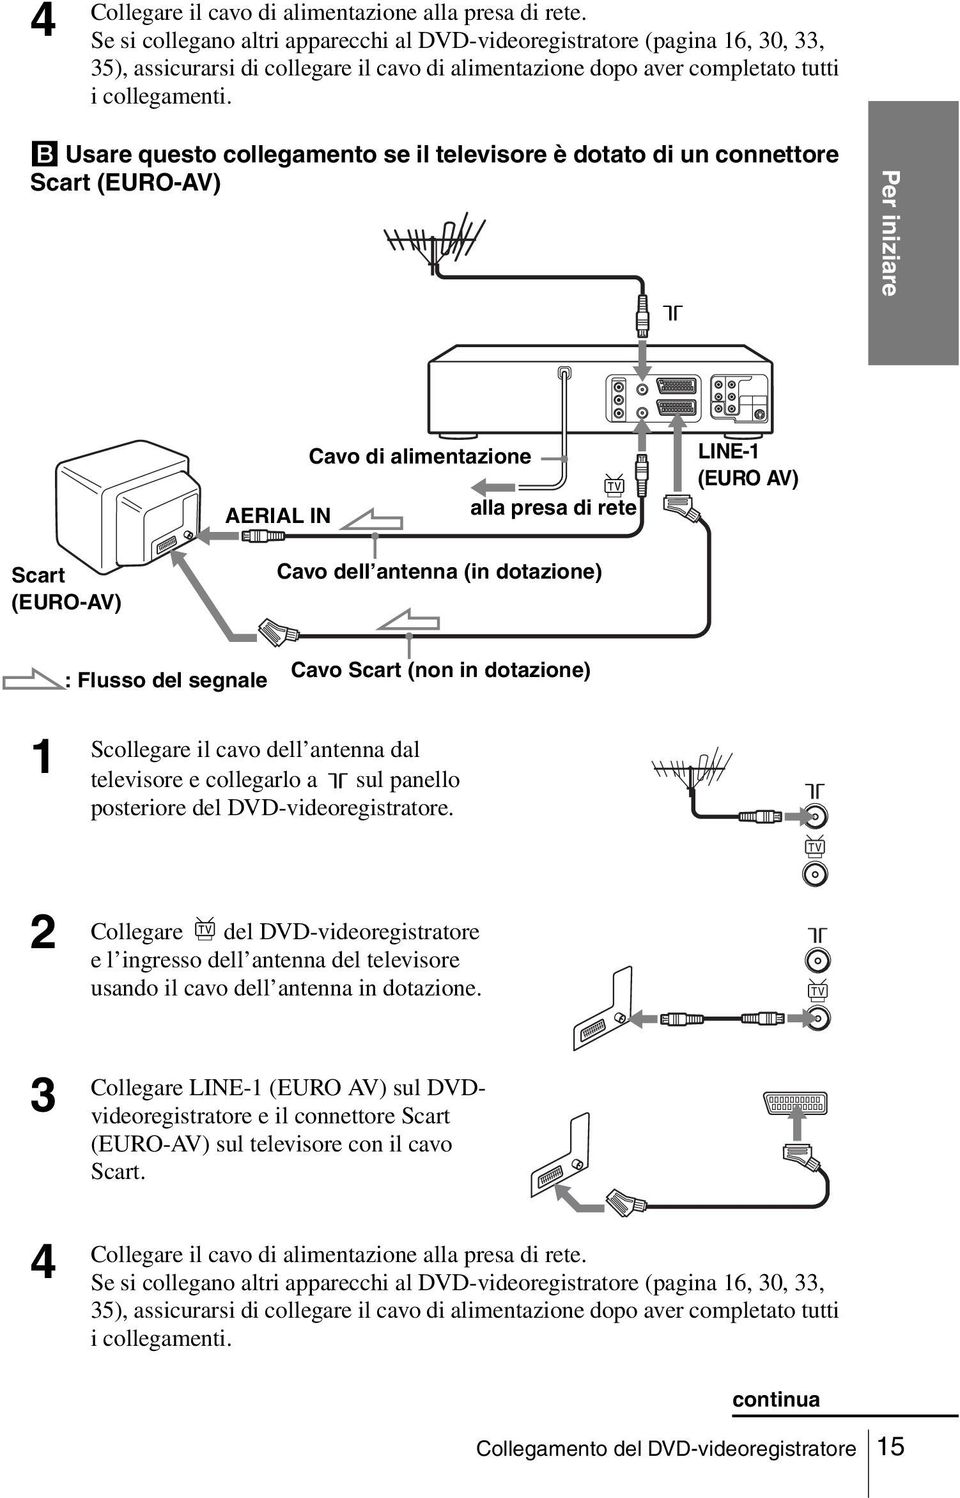 B Usare questo collegamento se il televisore è dotato di un connettore Scart (EURO-AV) Per iniziare AERIAL IN Cavo di alimentazione alla presa di rete LINE-1 (EURO AV) Scart (EURO-AV) Cavo dell